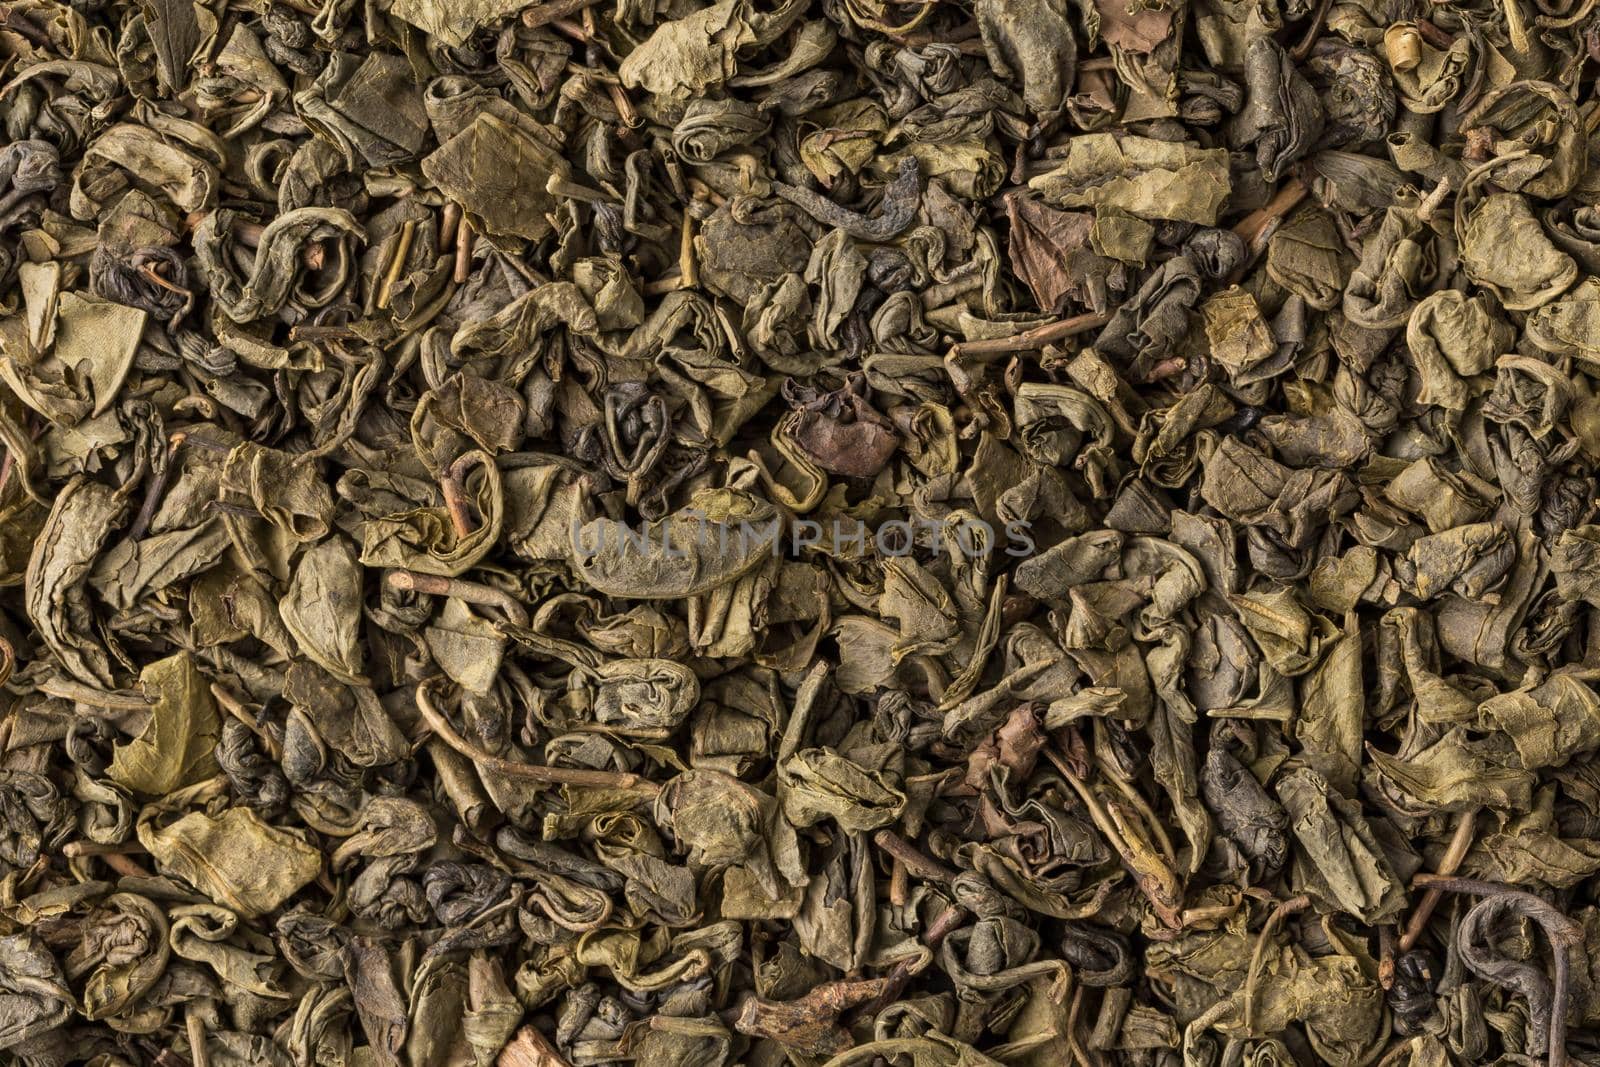 Gunpowder green tea  by RTsubin